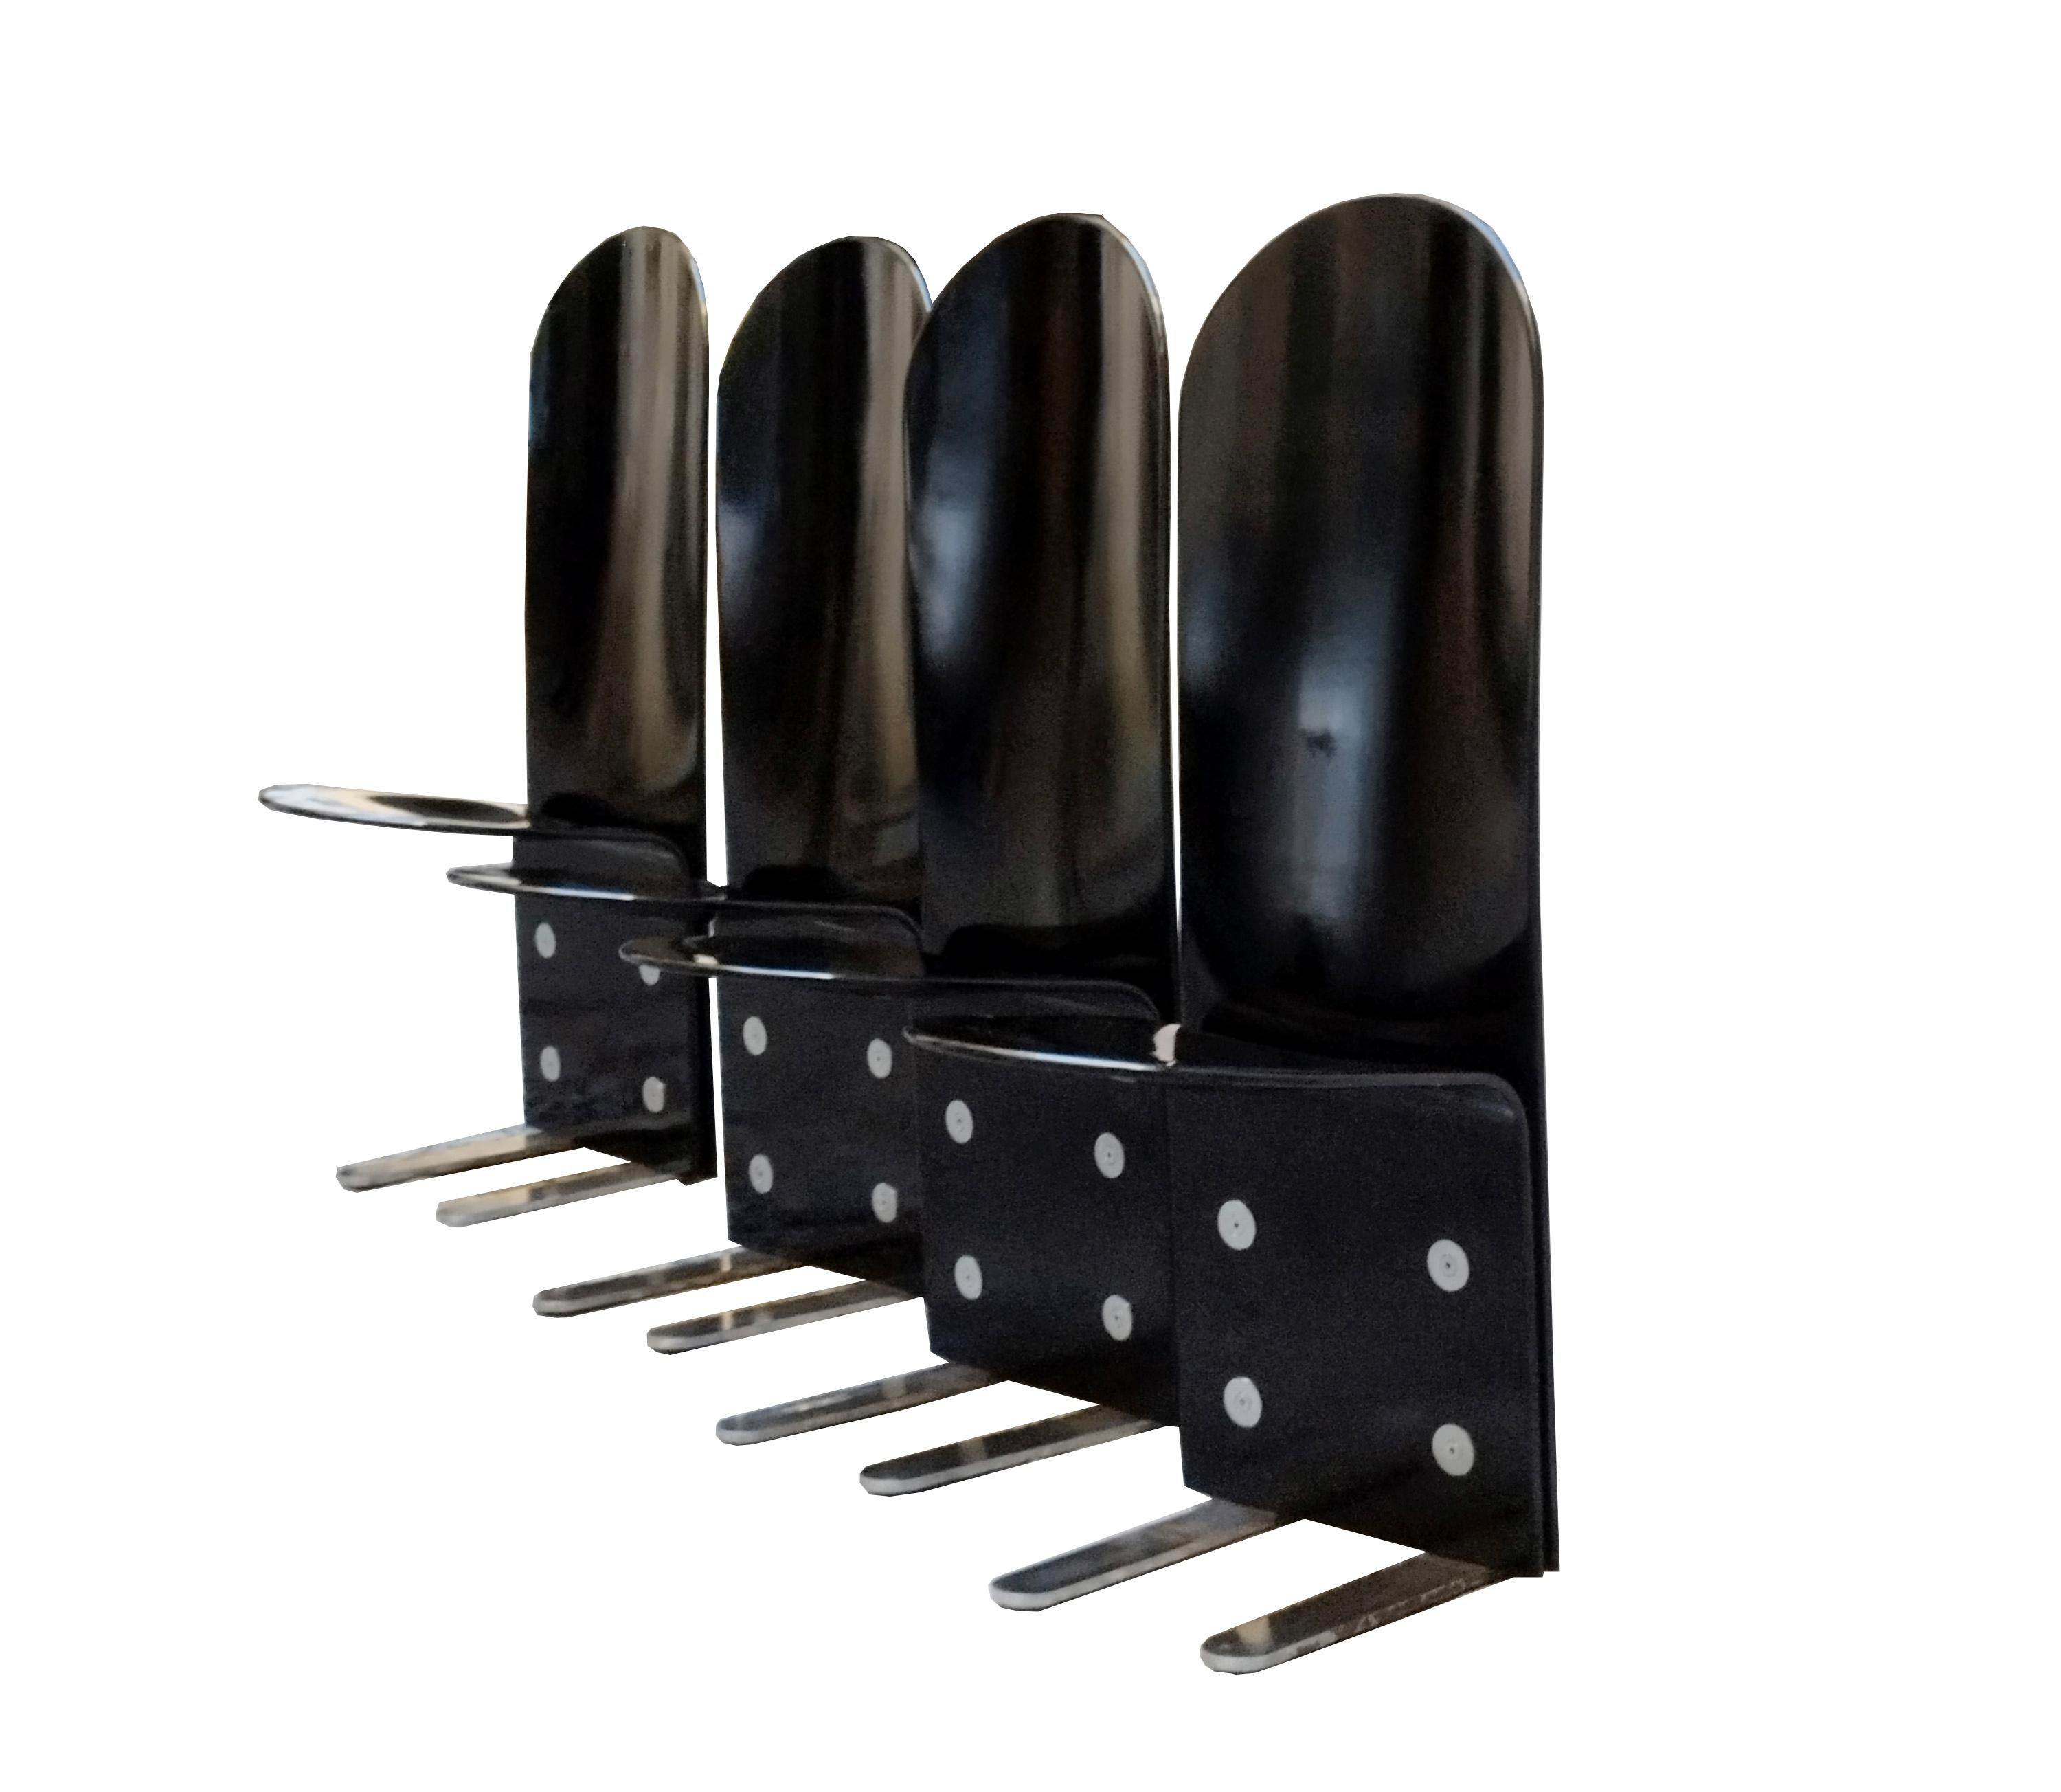 Satz von vier Stühlen Modell Pellicano aus gebogenem, schwarz lackiertem Holz Verchromte Stahlfüße mit Schrauben und Unterlegscheiben zur Befestigung des Holzes, Designer Luigi Saccardo für Armet Mitte der 1970er Jahre.